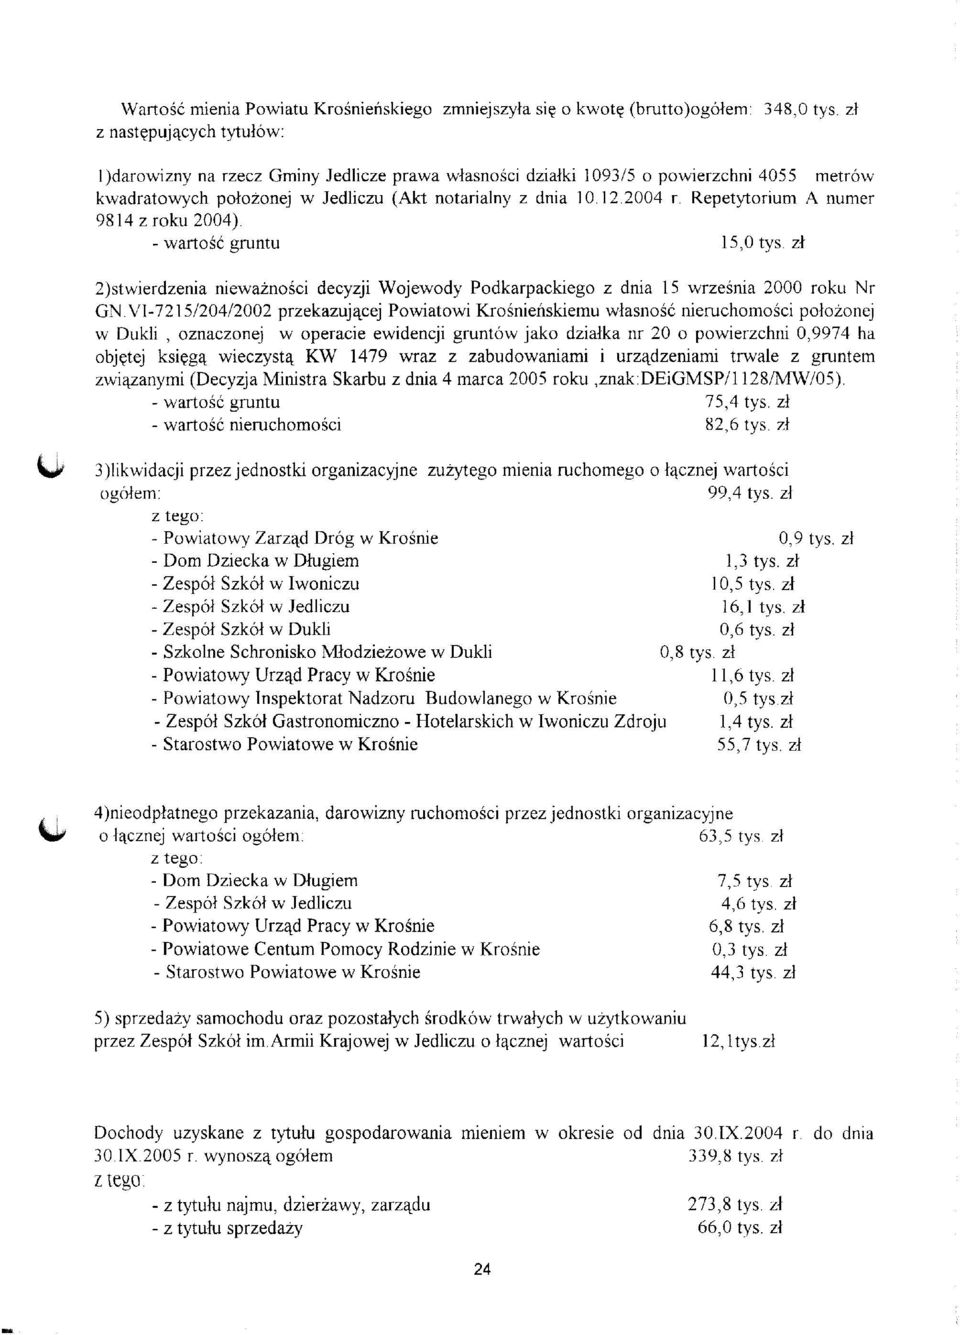 Repetytorium A numer 9814 z roku 2004) - wartość gruntu 15,0 tys zł 2)stwierdzenia nieważności decyzji Wojewody Podkarpackiego z dnia 15 września 2000 roku Nr GN.